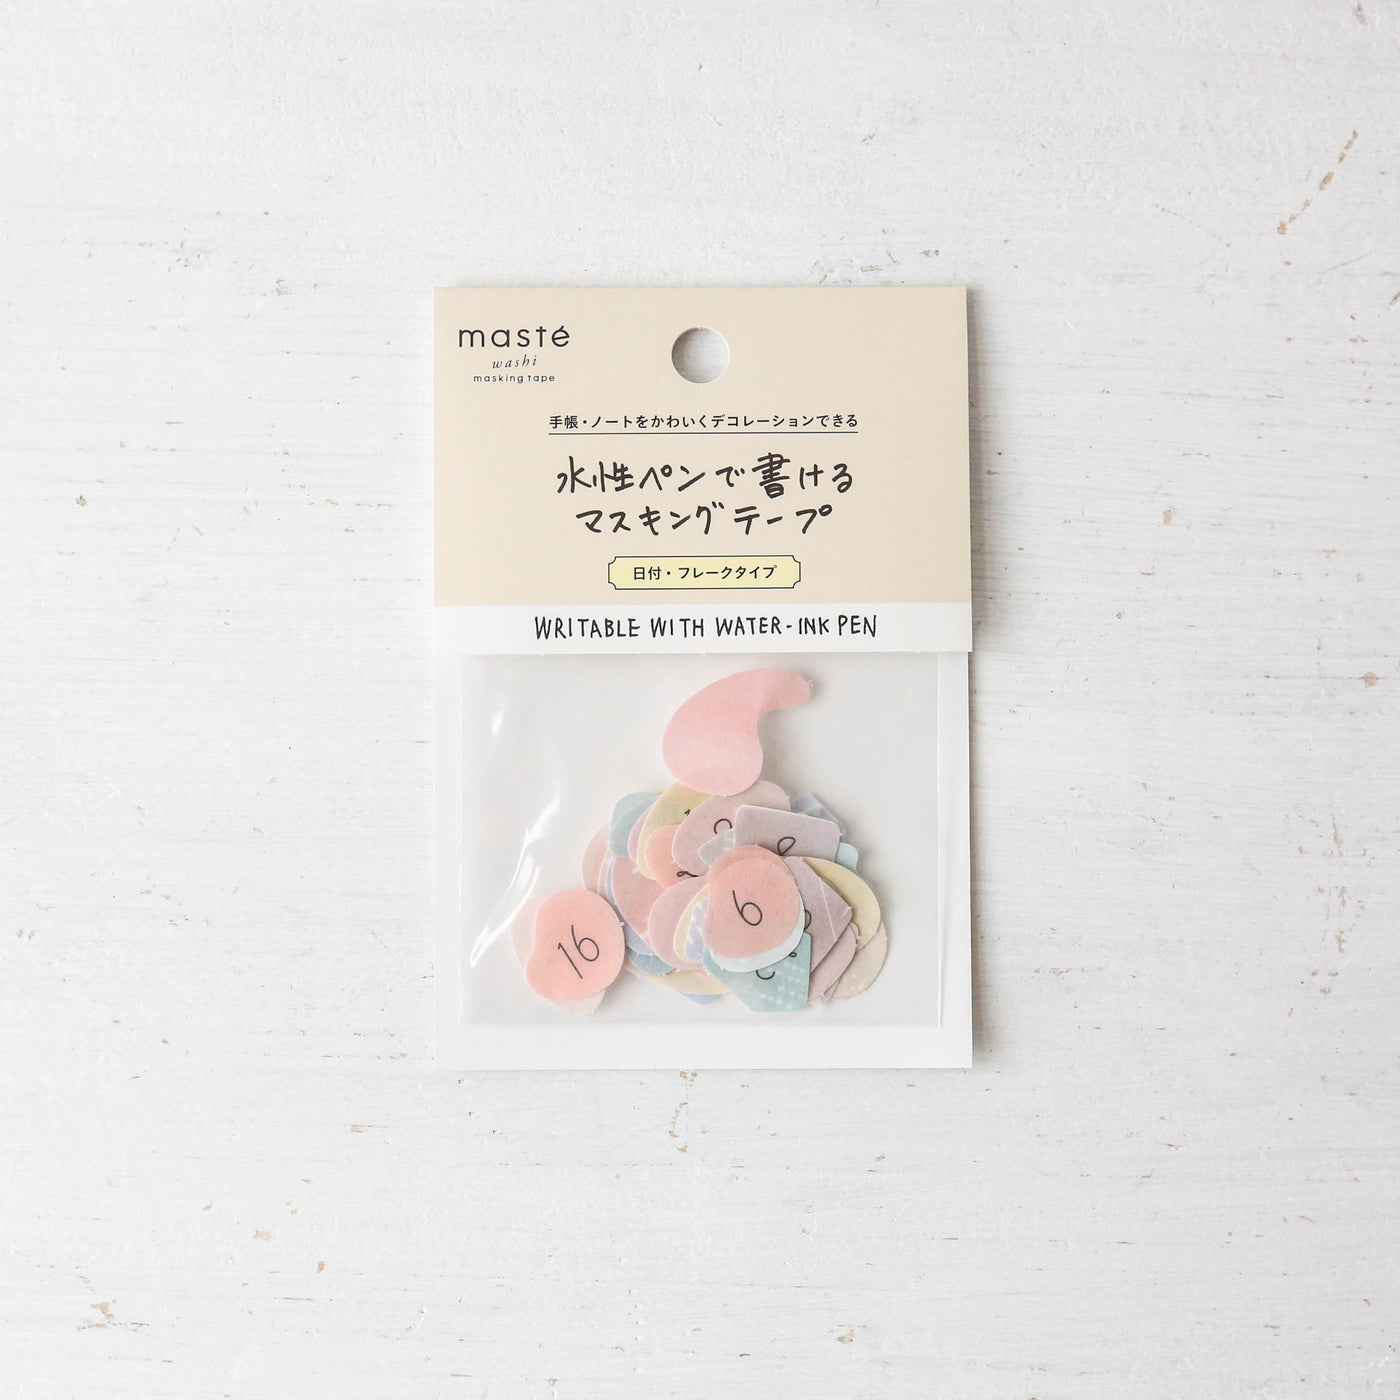 Flake Washi Tape Sticker Confetti